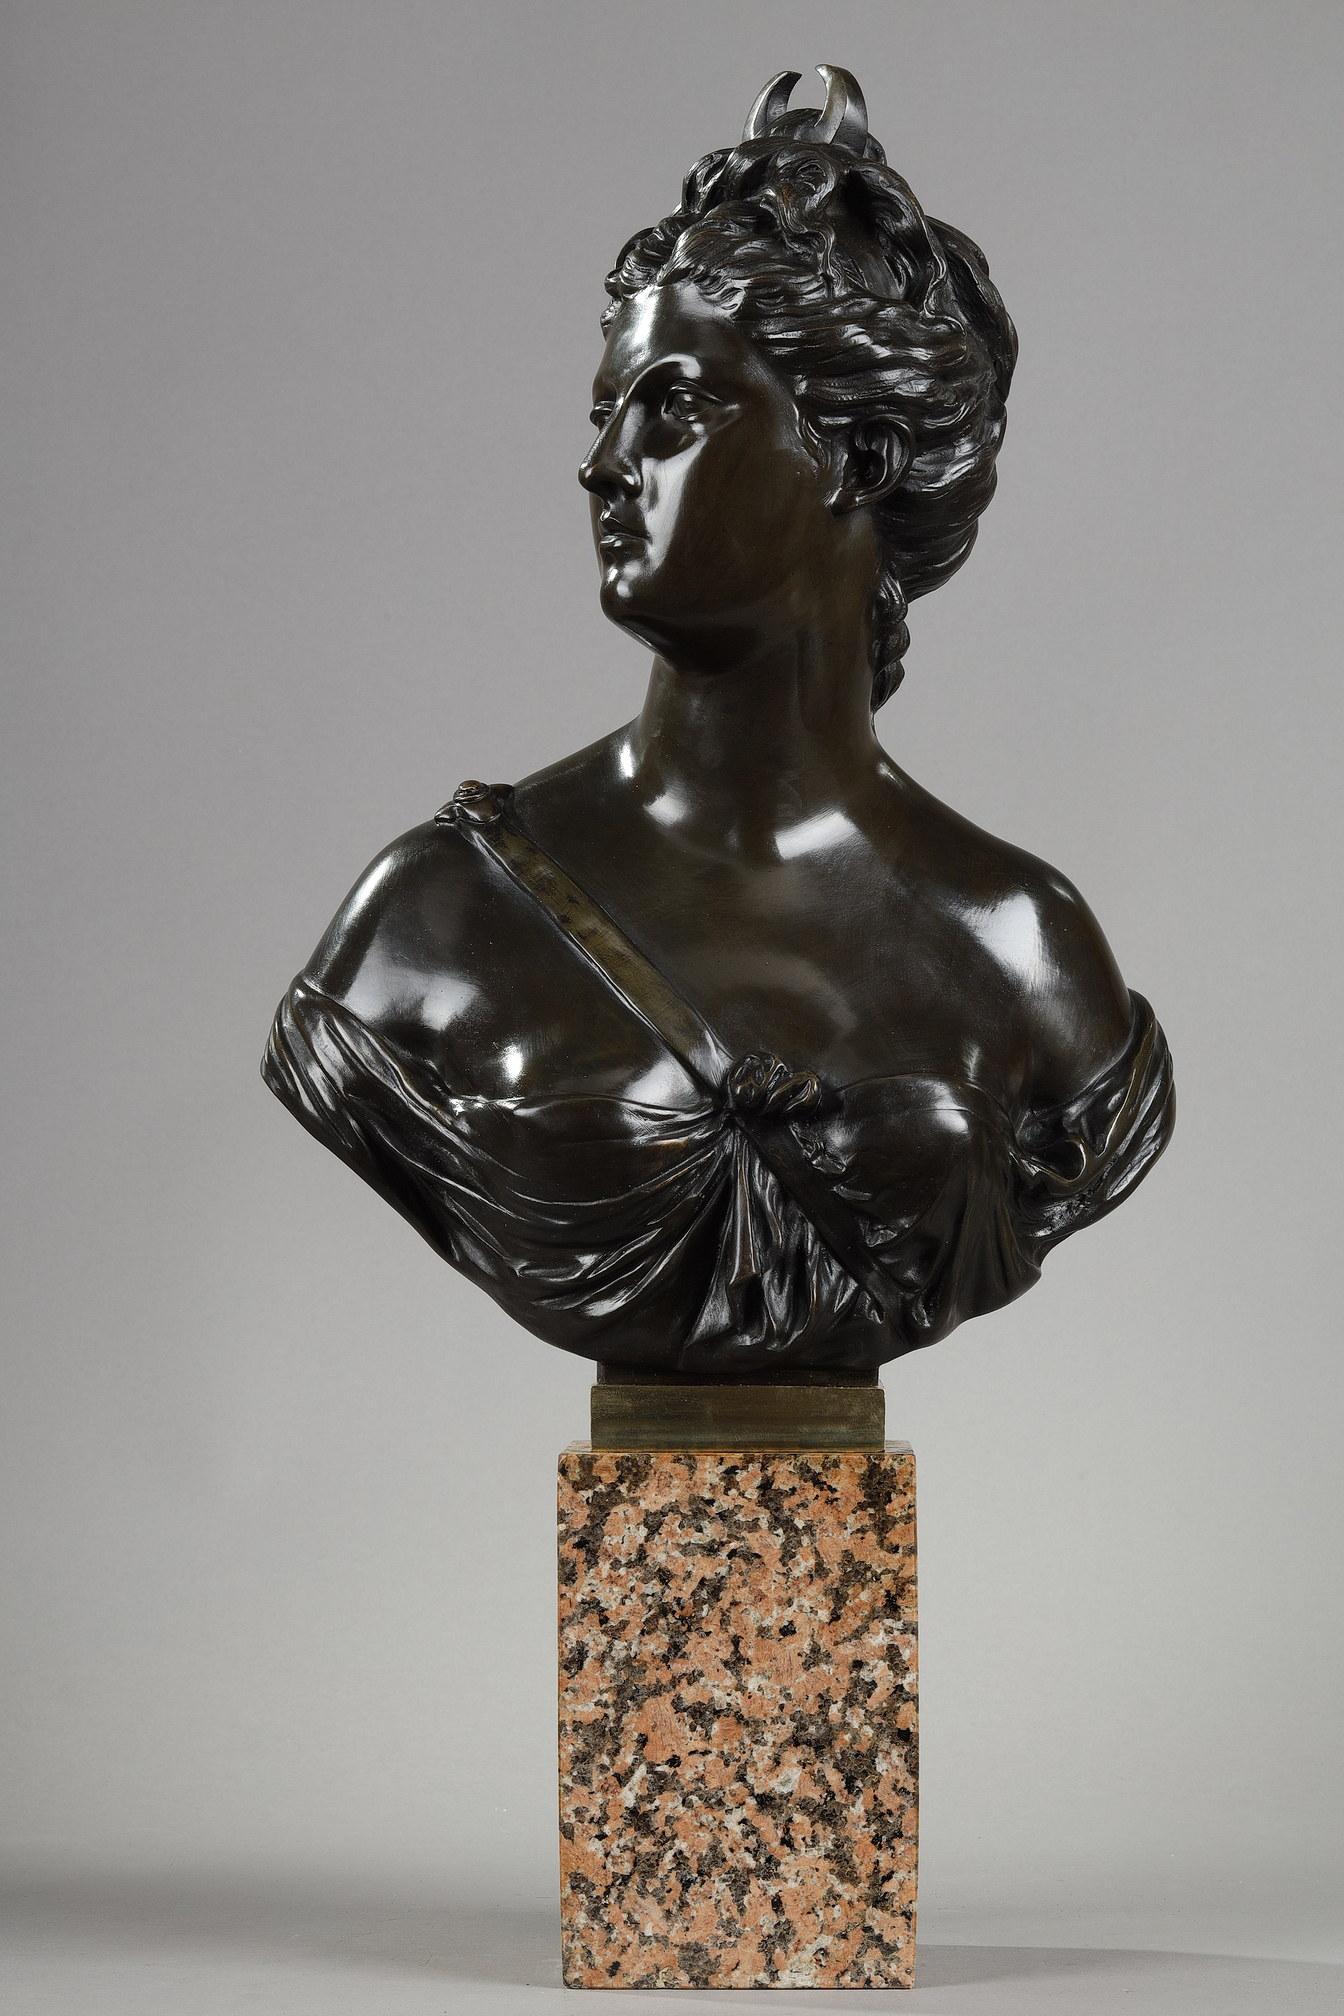 Skulptur aus Bronze, die Diana die Jägerin nach Jean-Antoine Houdon (1741-1828) darstellt. In der römischen Mythologie ist Diana die Göttin der Jagd und der Nacht, ähnlich wie in der griechischen Mythologie Artemis. Sie ist in einer Tunika mit einem